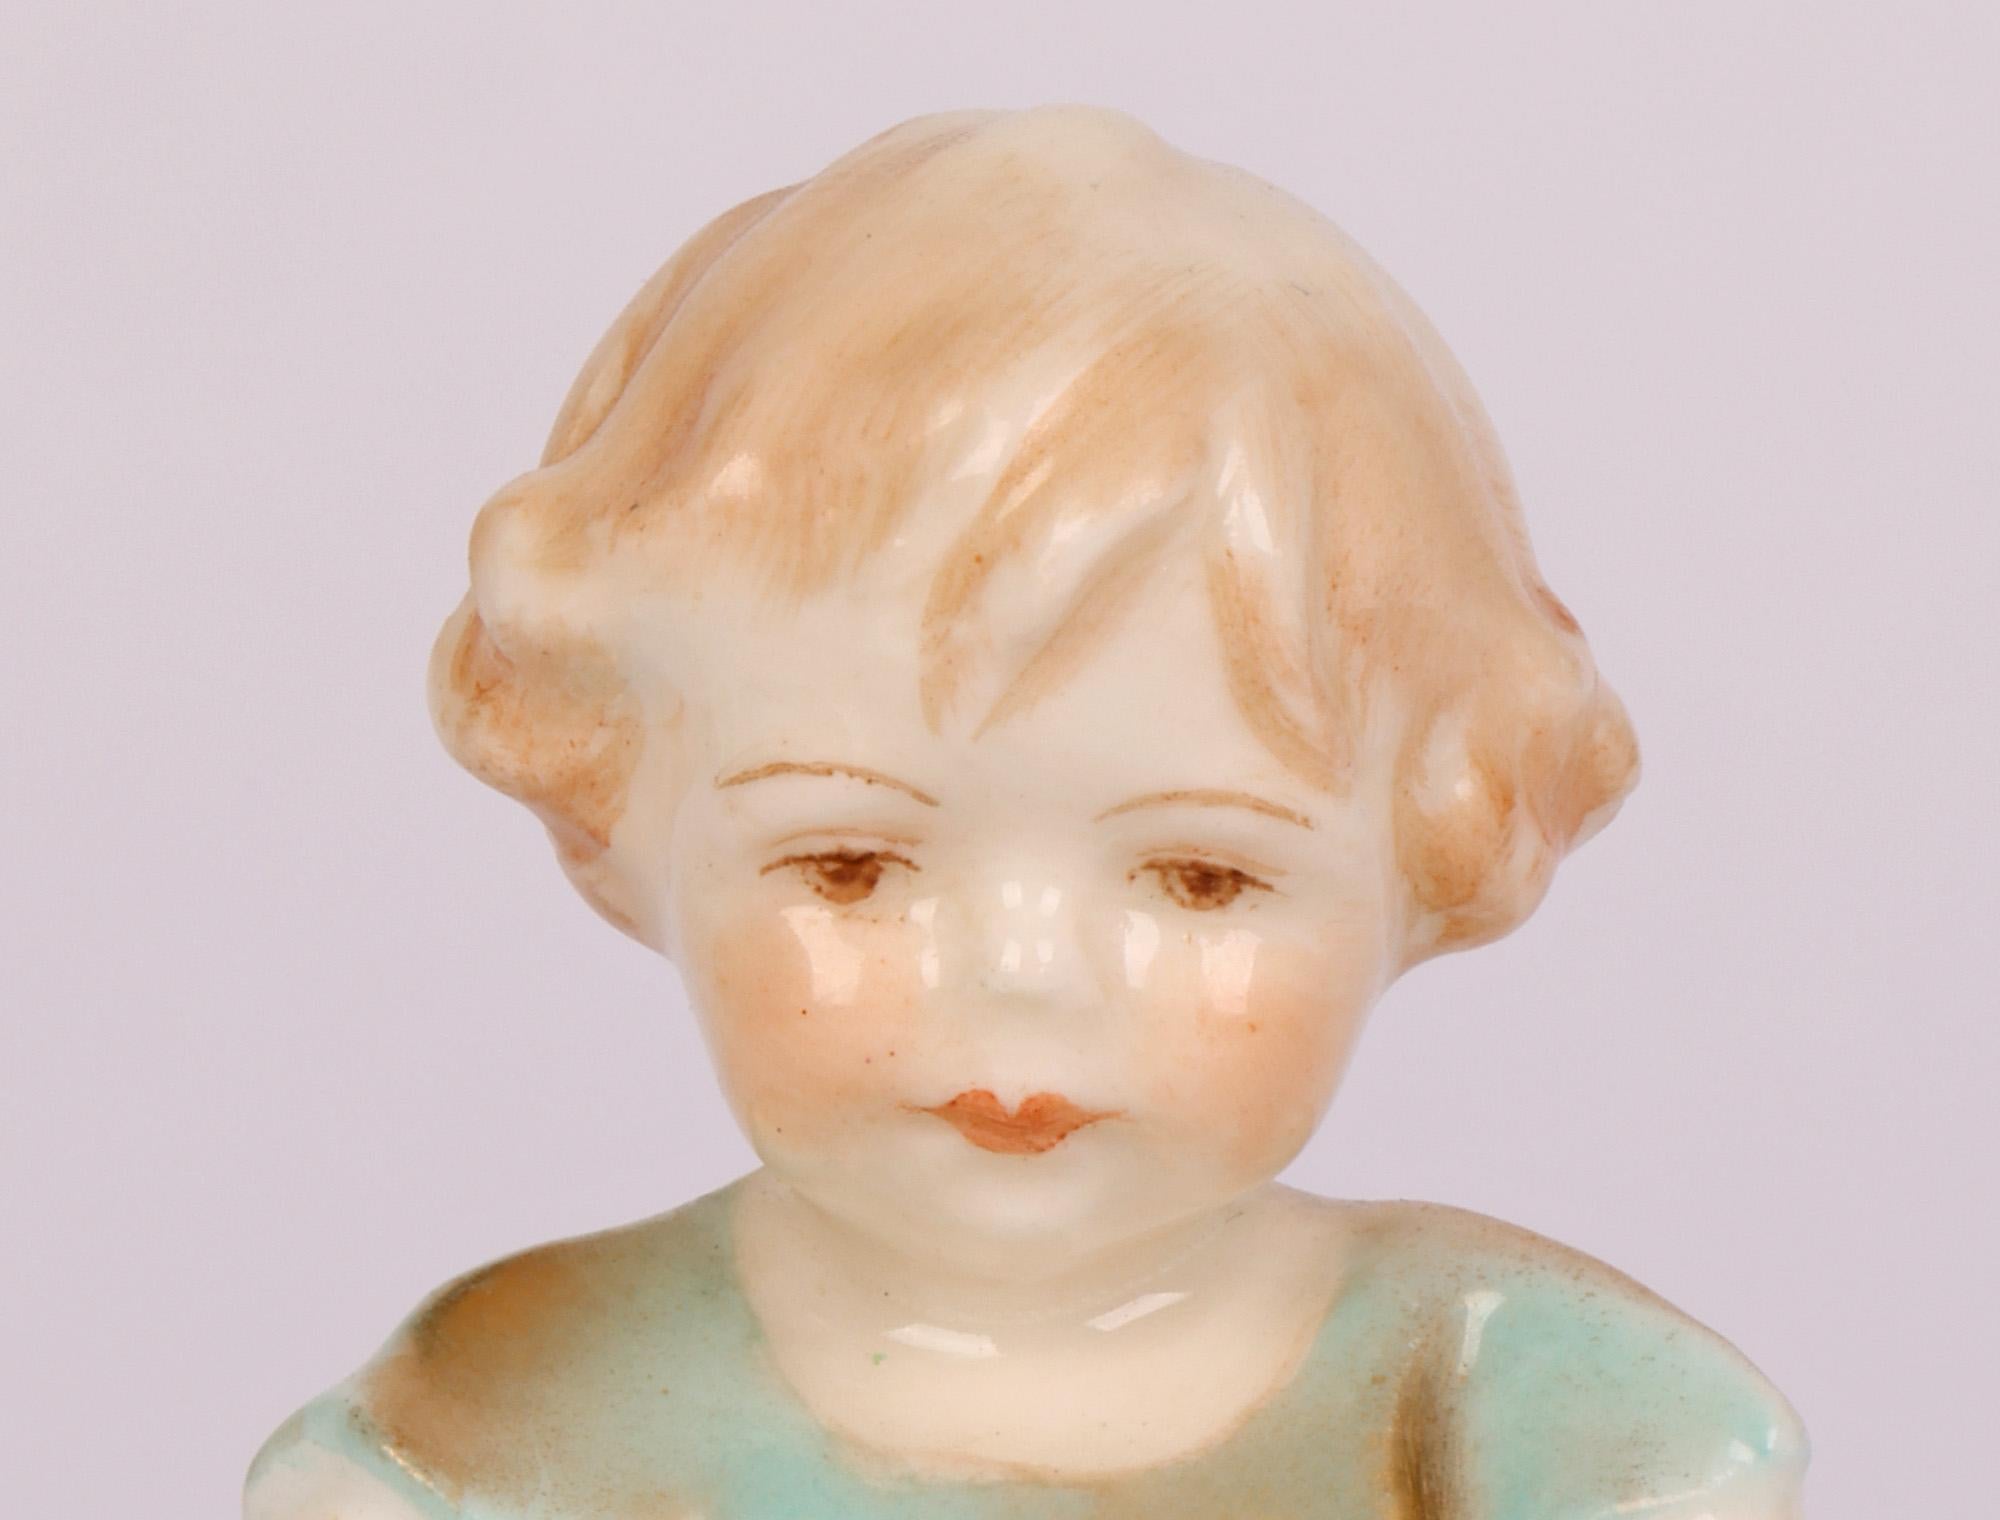 Ravissante et rare figurine en porcelaine Royal Worcester intitulée Joan, modelée par Freda G Doughty et datée de 1935. La très jeune figurine d'enfant repose sur une base en forme de demi-lune et porte une petite robe courte. La figure est bien